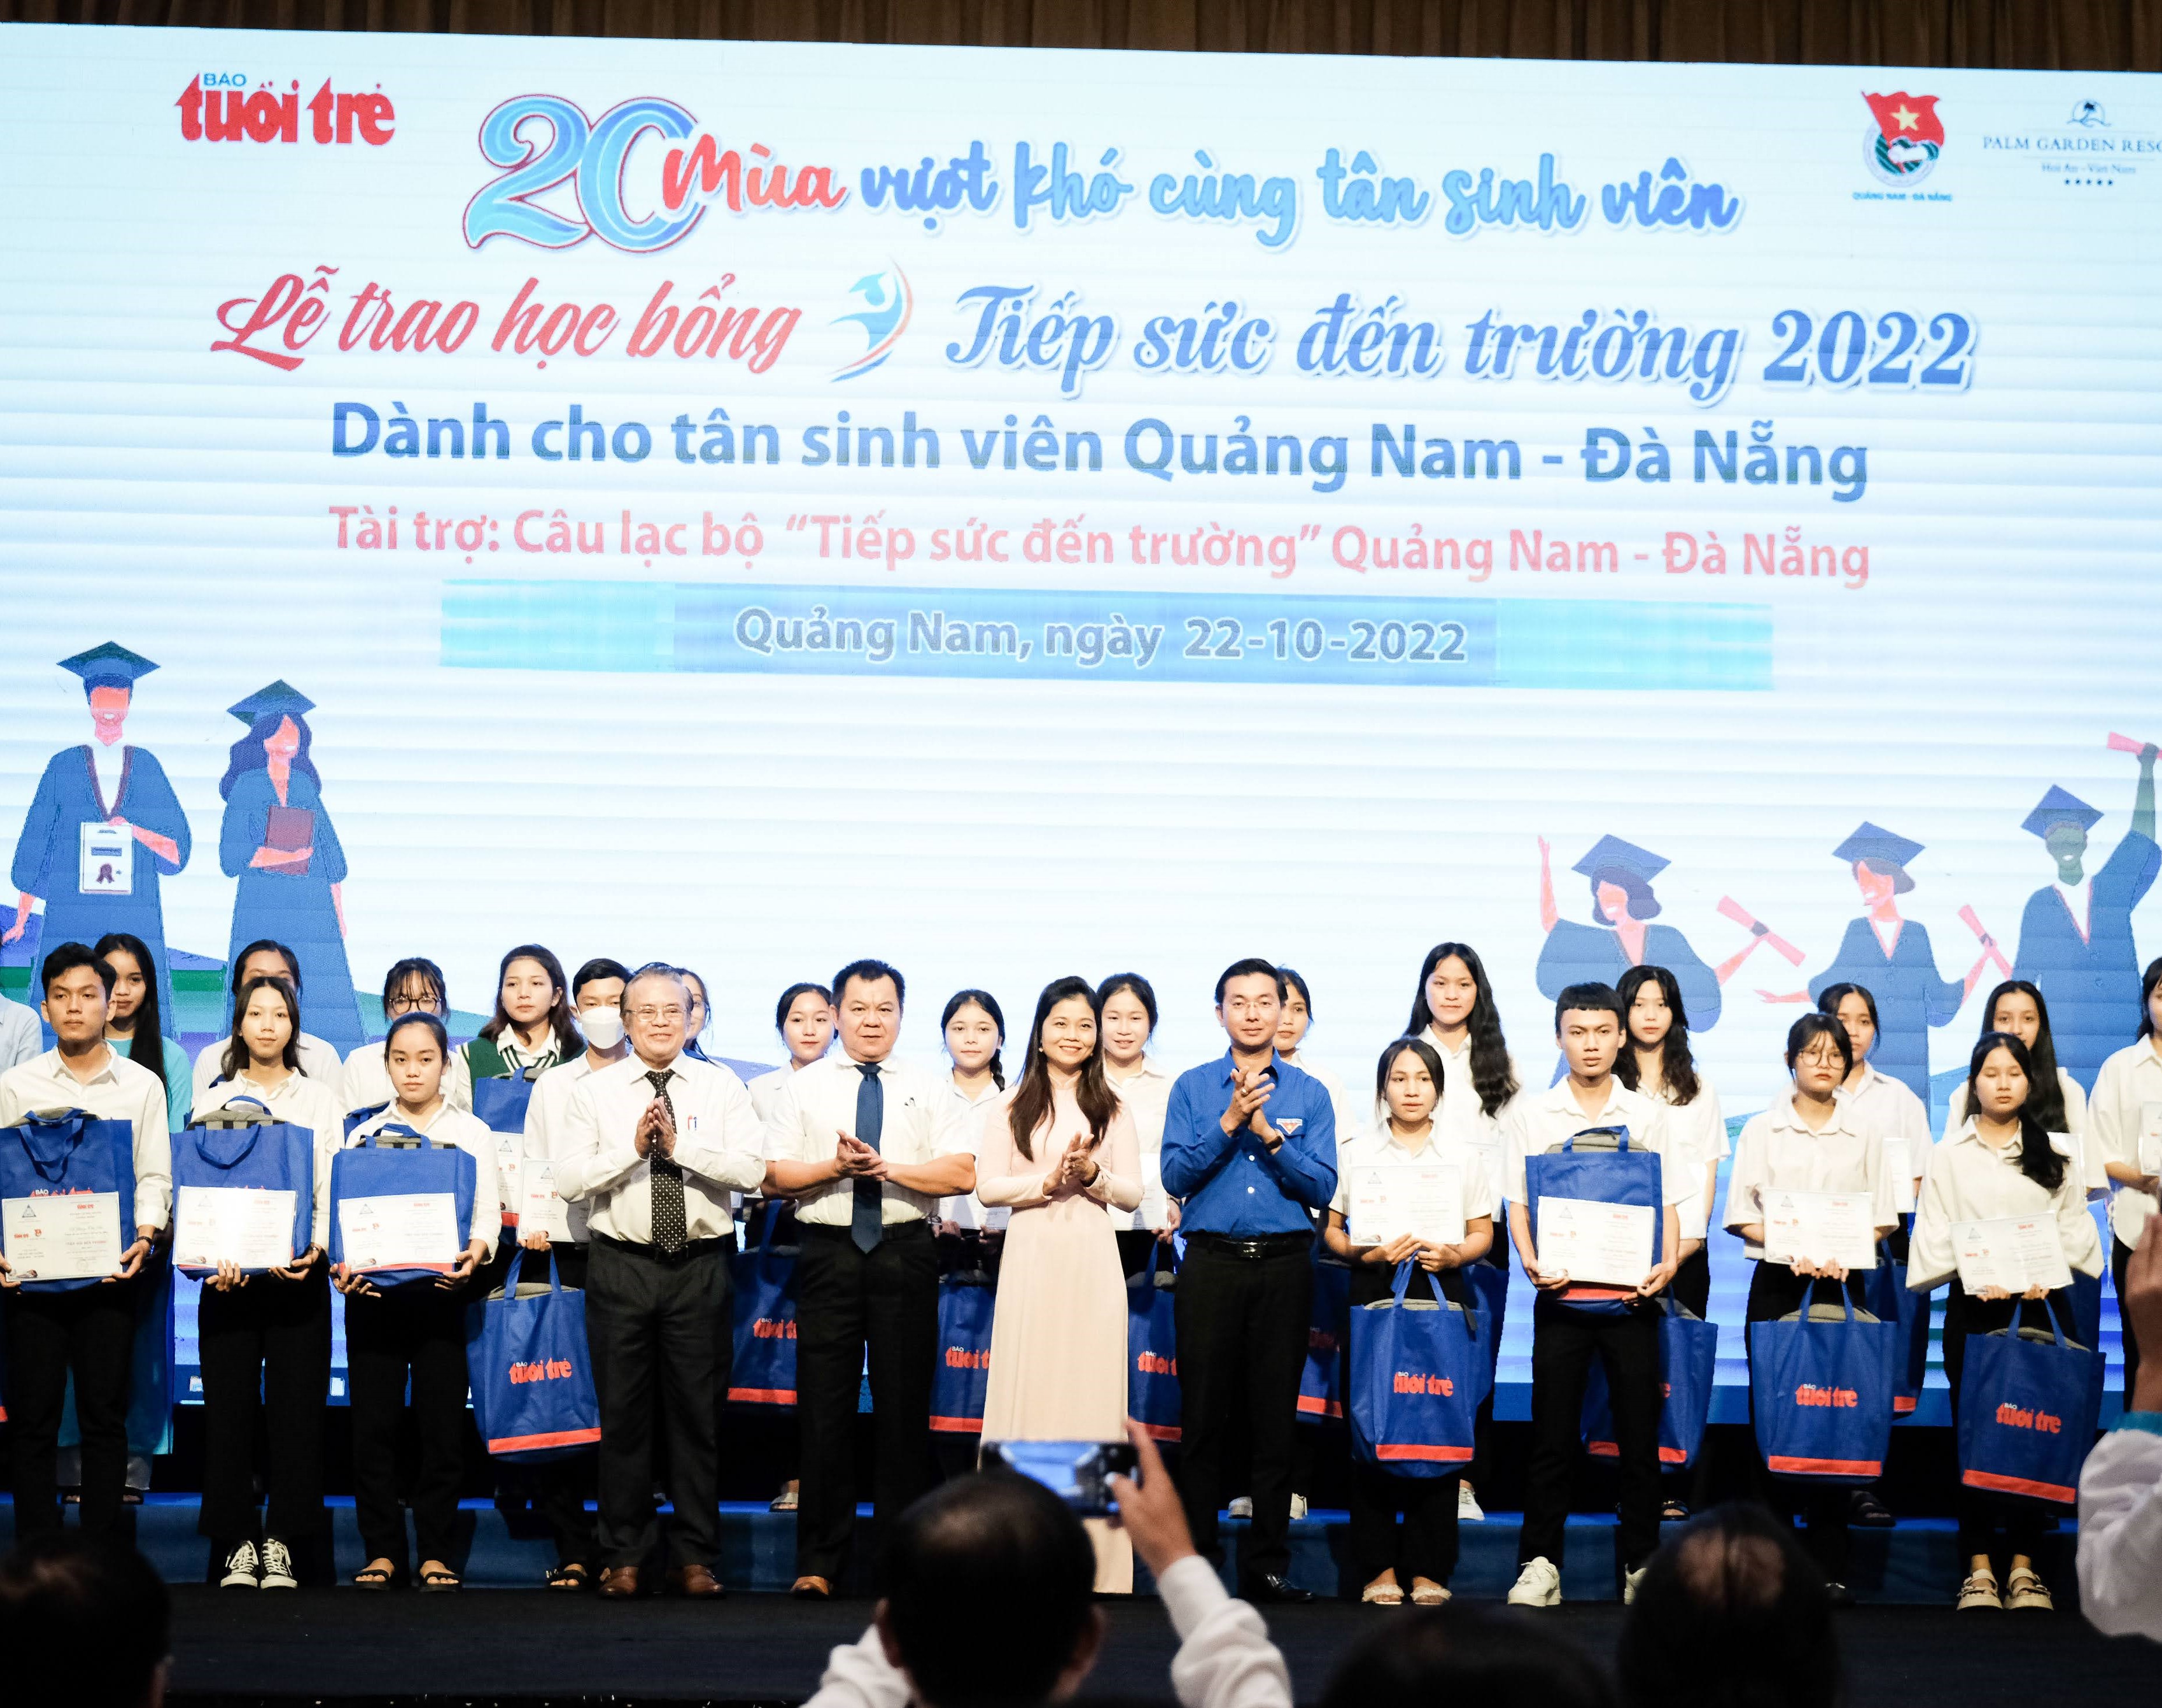 Tiếp sức đến trường cho 95 tân sinh viên Quảng Nam – Đà Nẵng